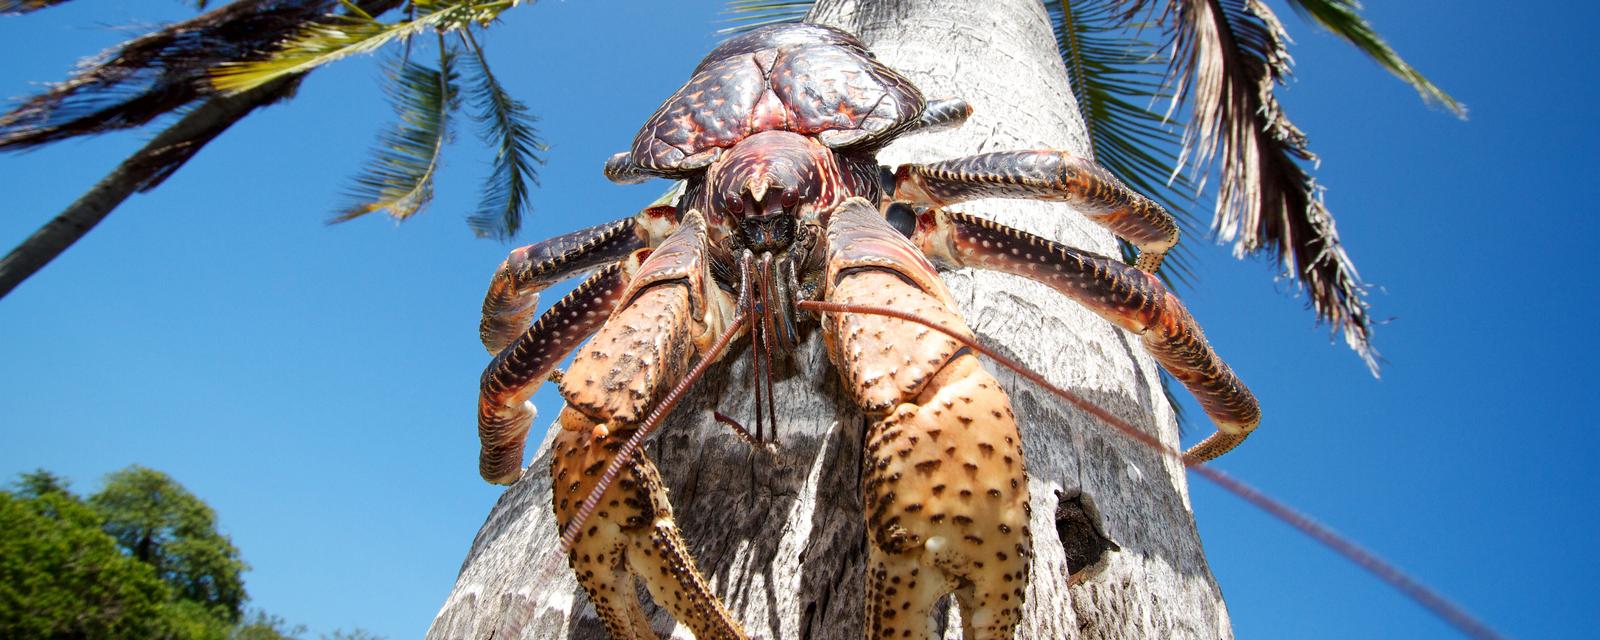 Coconut crab, Birgus latro Mbudya Island Tanzania